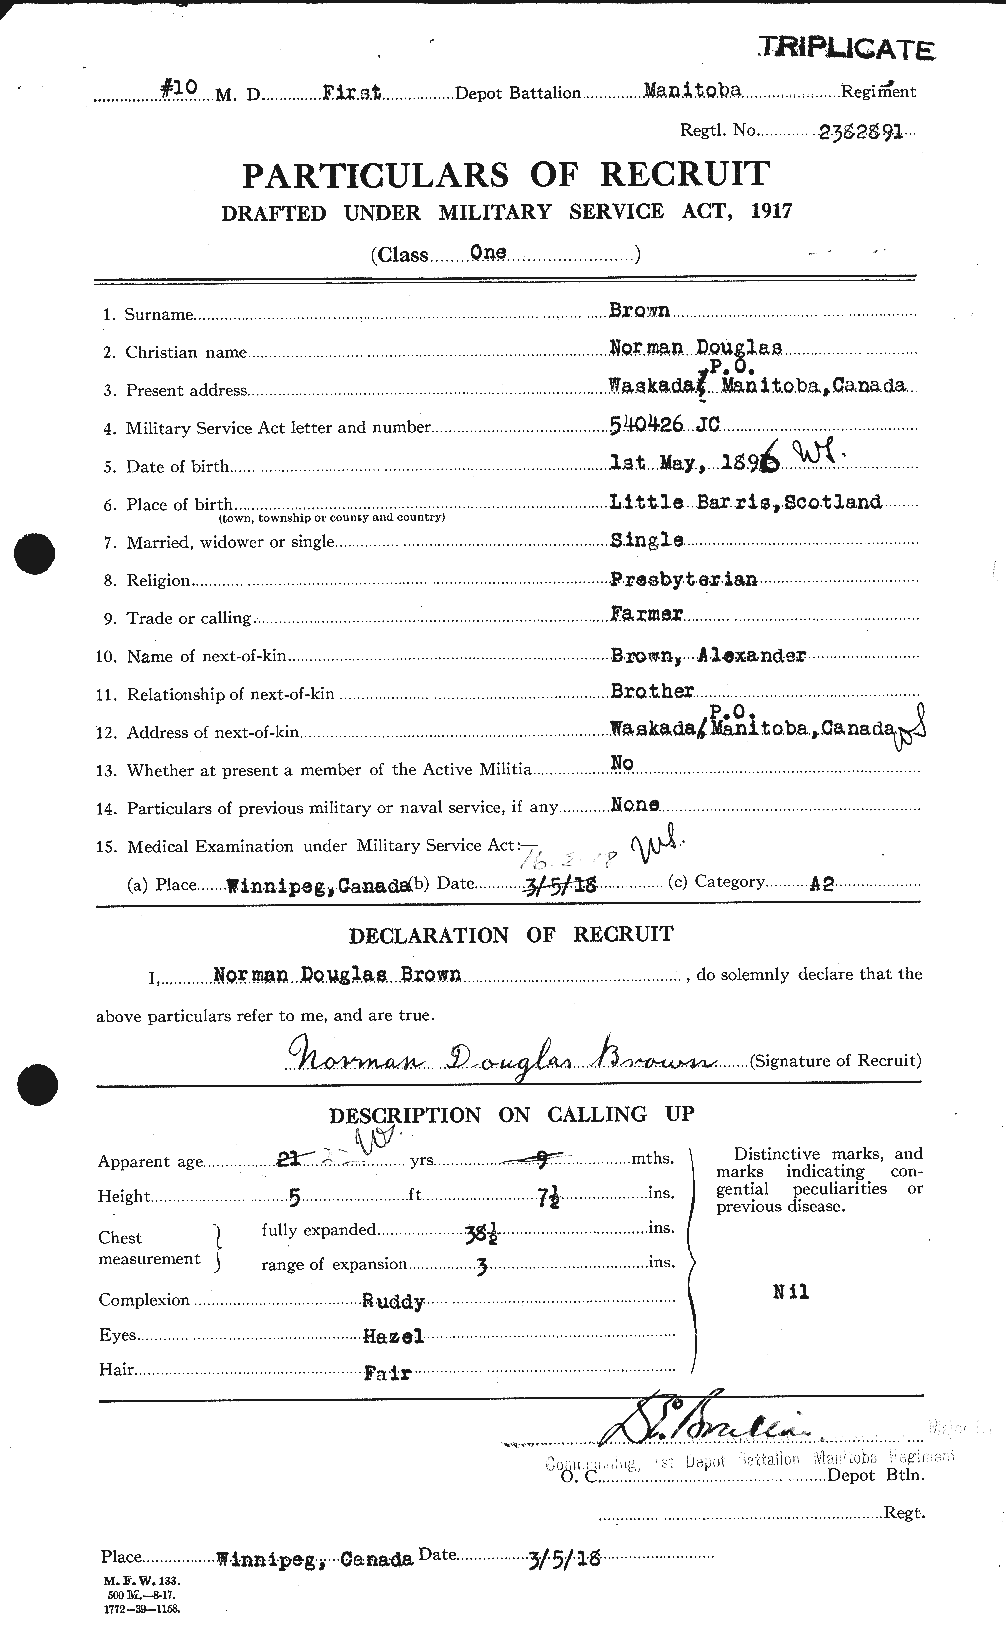 Dossiers du Personnel de la Première Guerre mondiale - CEC 267107a